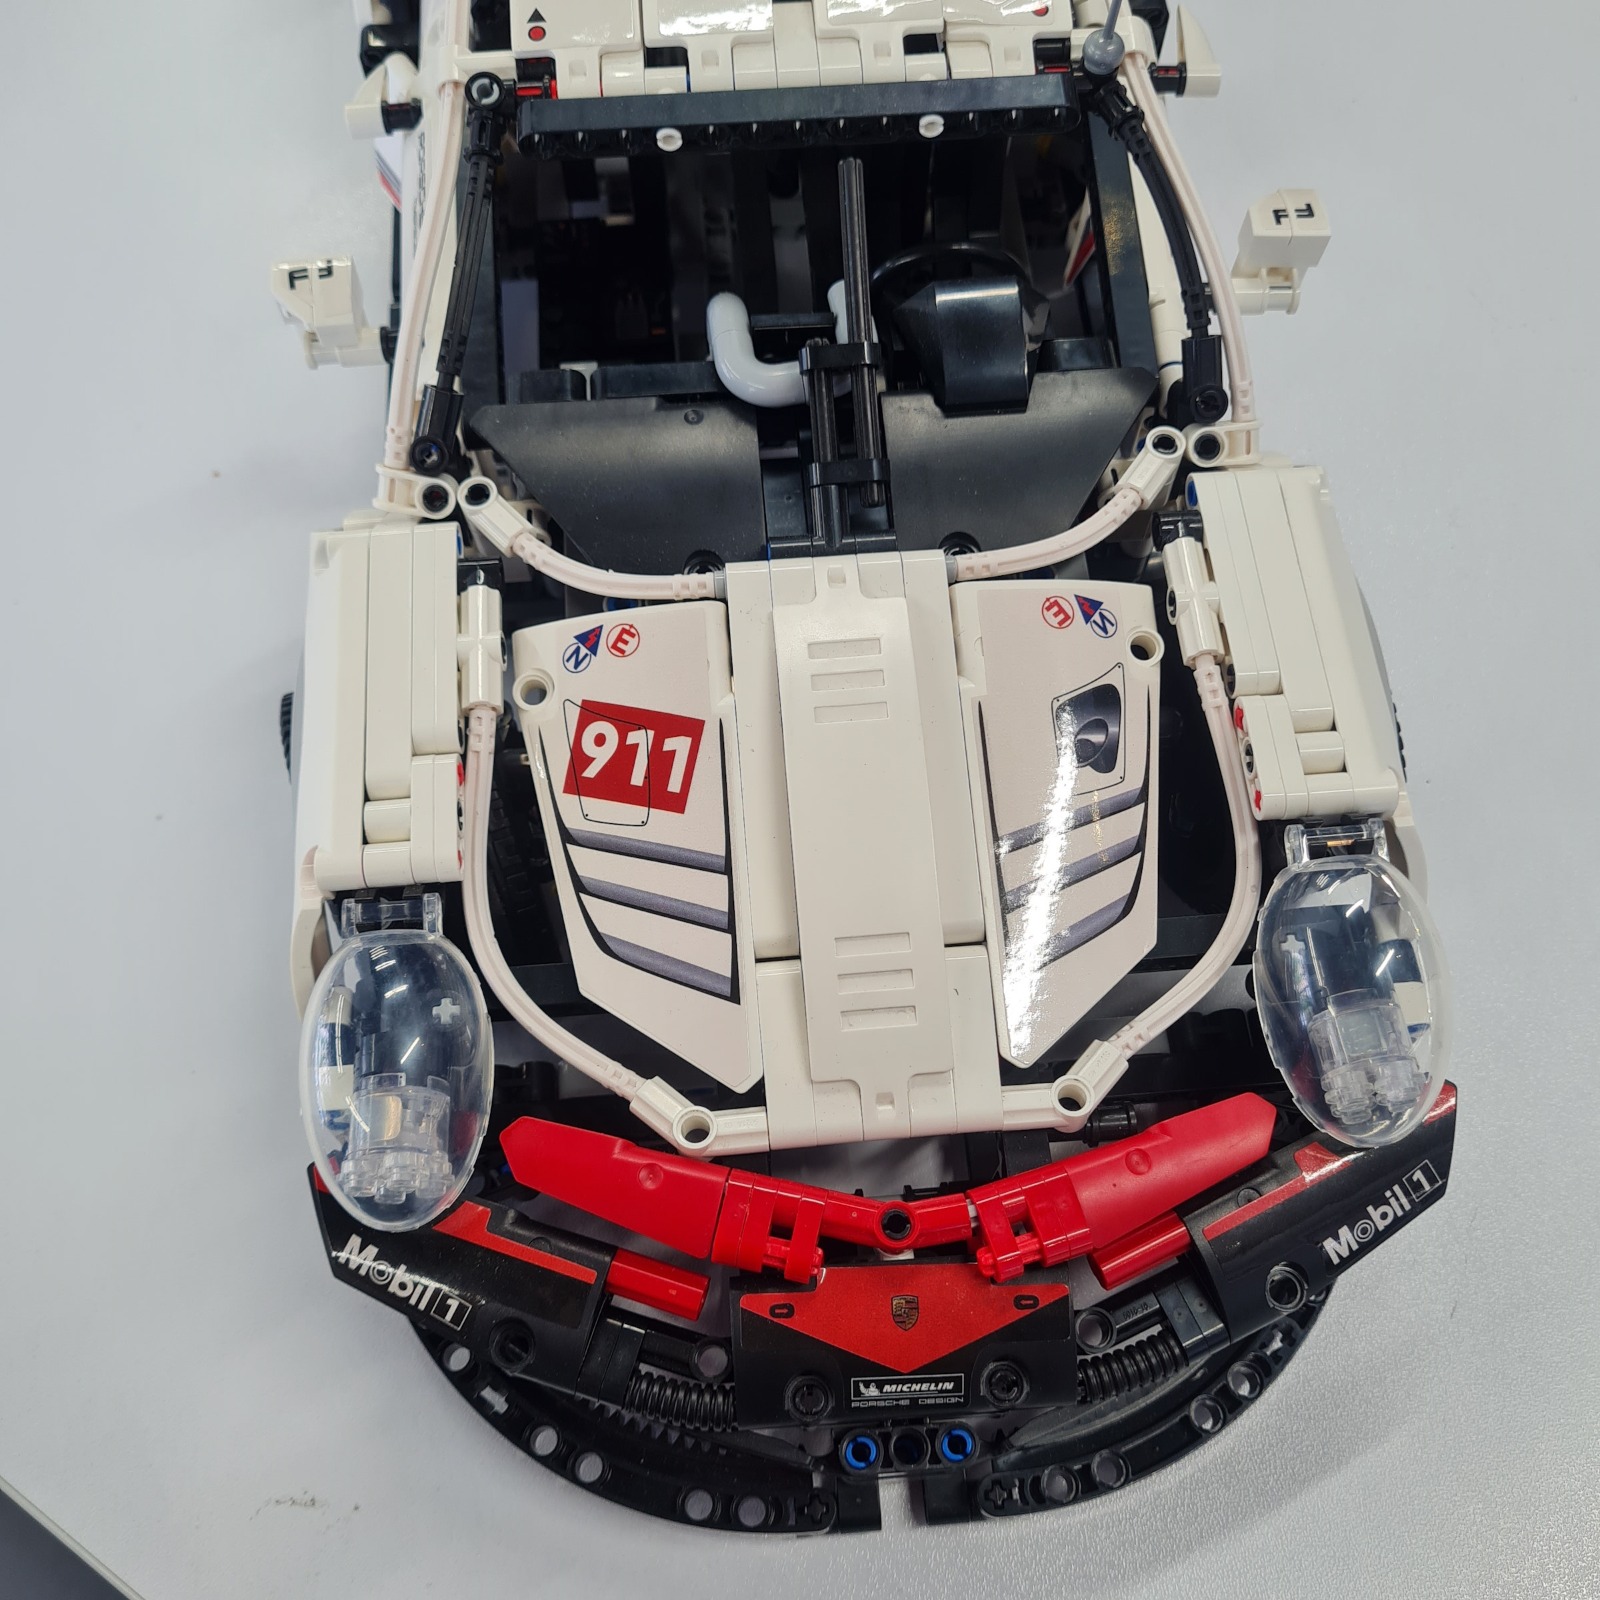 ساختنی نبی مدل XUJM001 Porsche